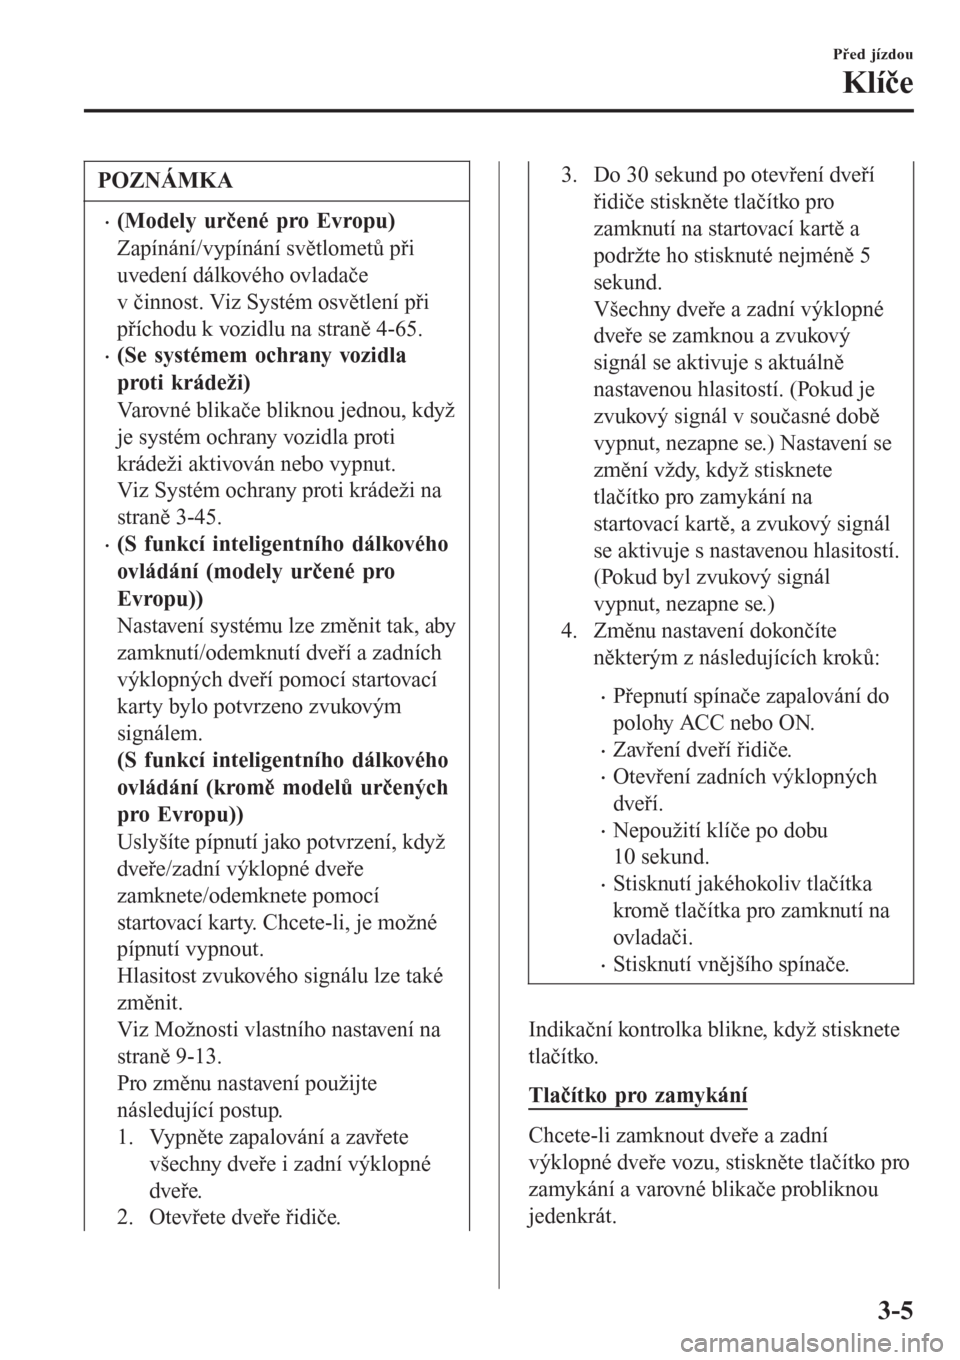 MAZDA MODEL CX-3 2015  Návod k obsluze (in Czech) POZNÁMKA
•(Modely určené pro Evropu)
Zapínání/vypínání světlometů při
uvedení dálkového ovladače
v činnost. Viz Systém osvětlení při
příchodu k vozidlu na straně 4-65.
•(Se